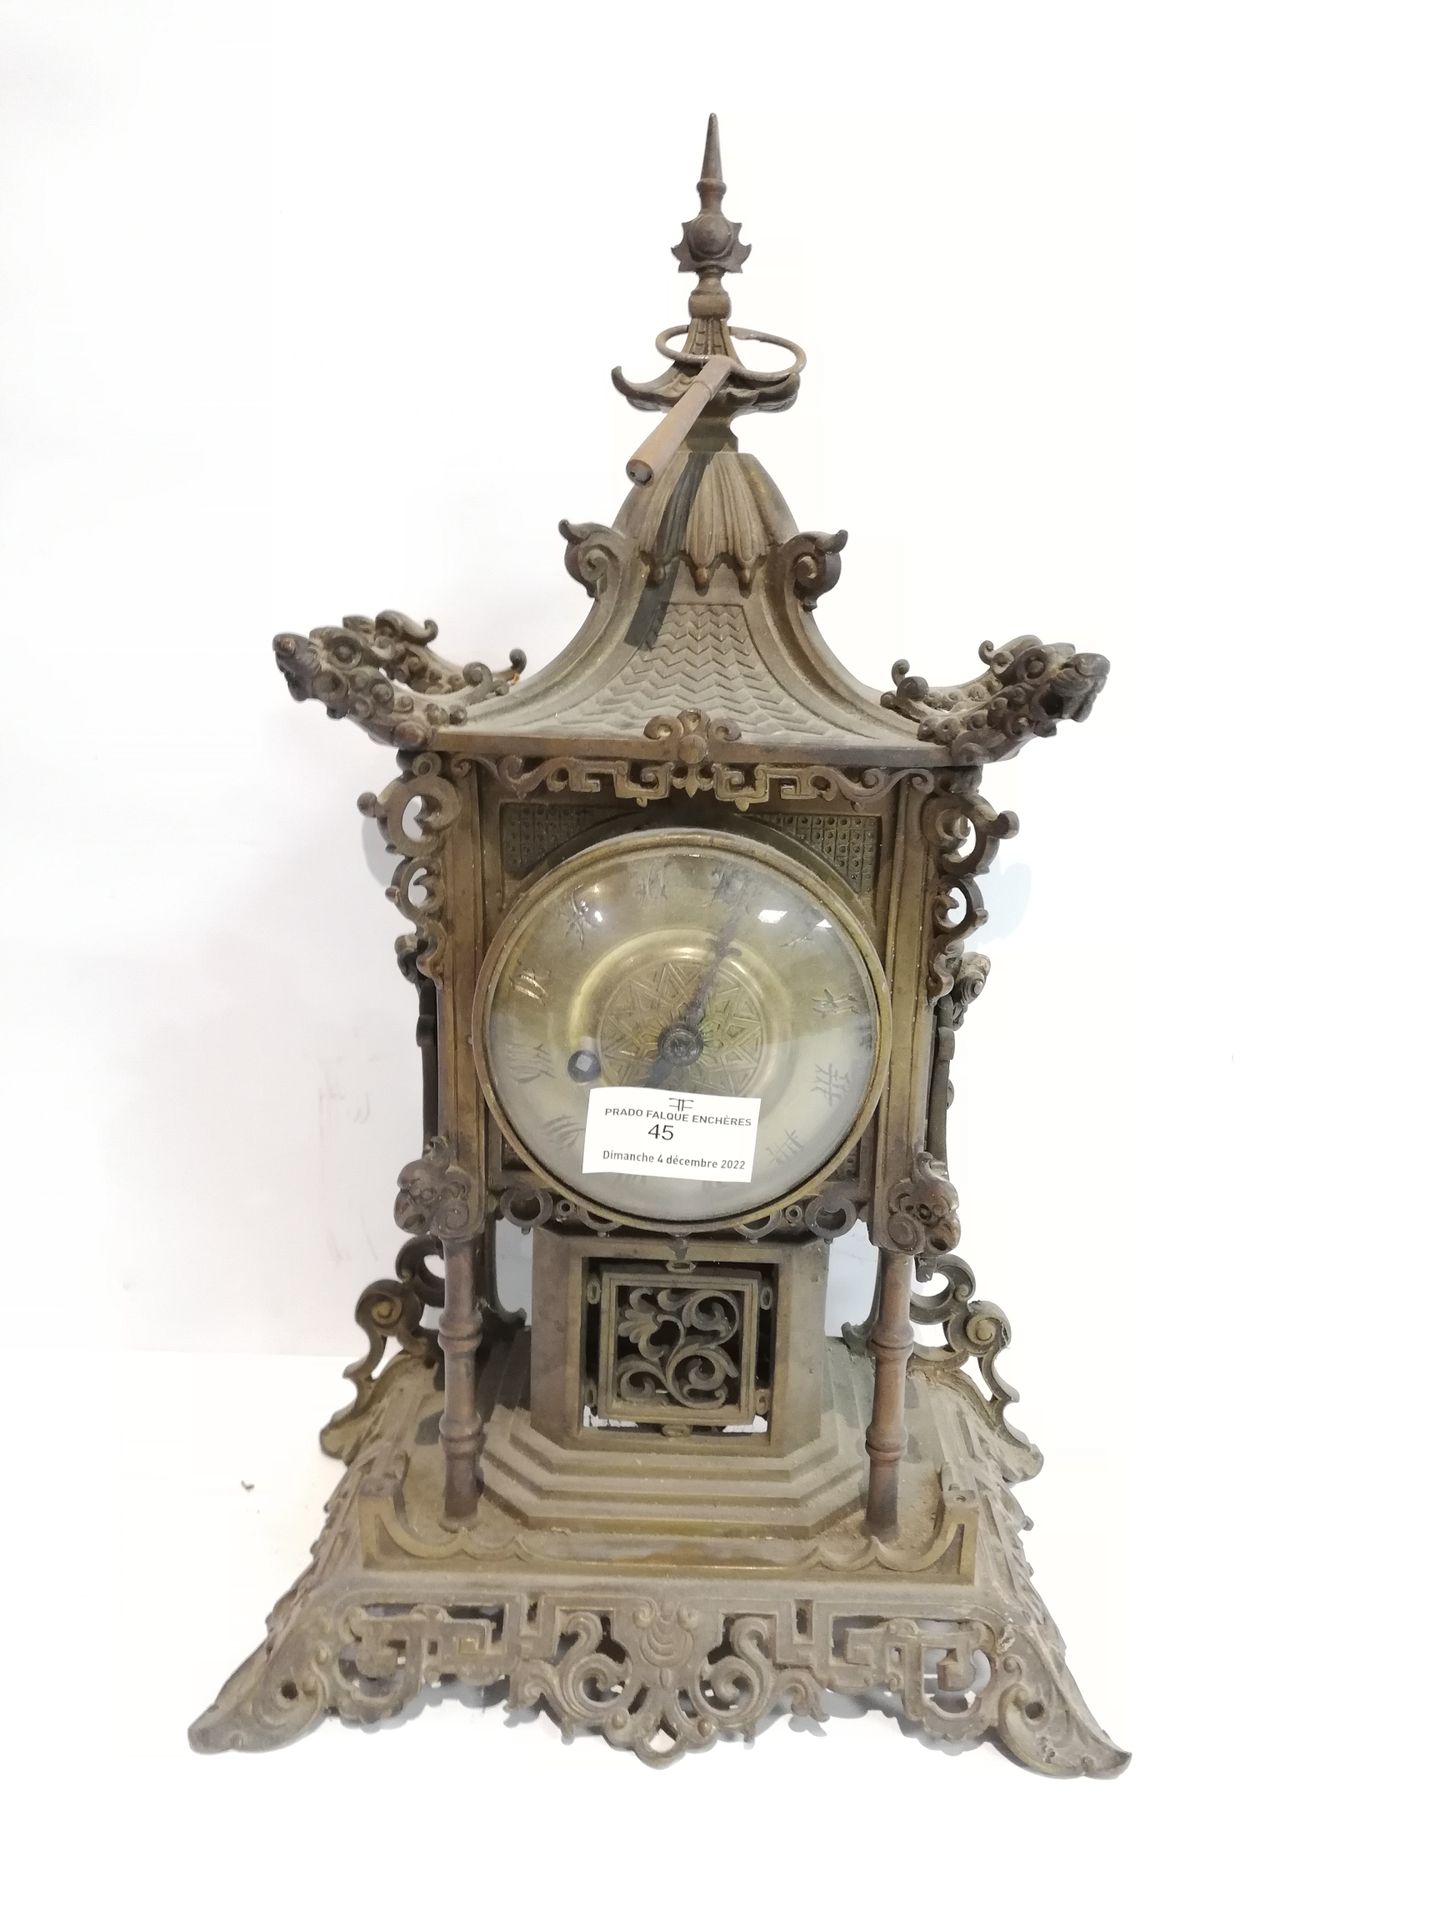 Null 青铜壁炉（铜锈磨损），中国模型，时钟是一个宝塔的形状，装饰着龙和佛狗，黄铜表盘上有中国风格的人物：39x23x14厘米，伴随着两个烛台的模型，高29厘&hellip;